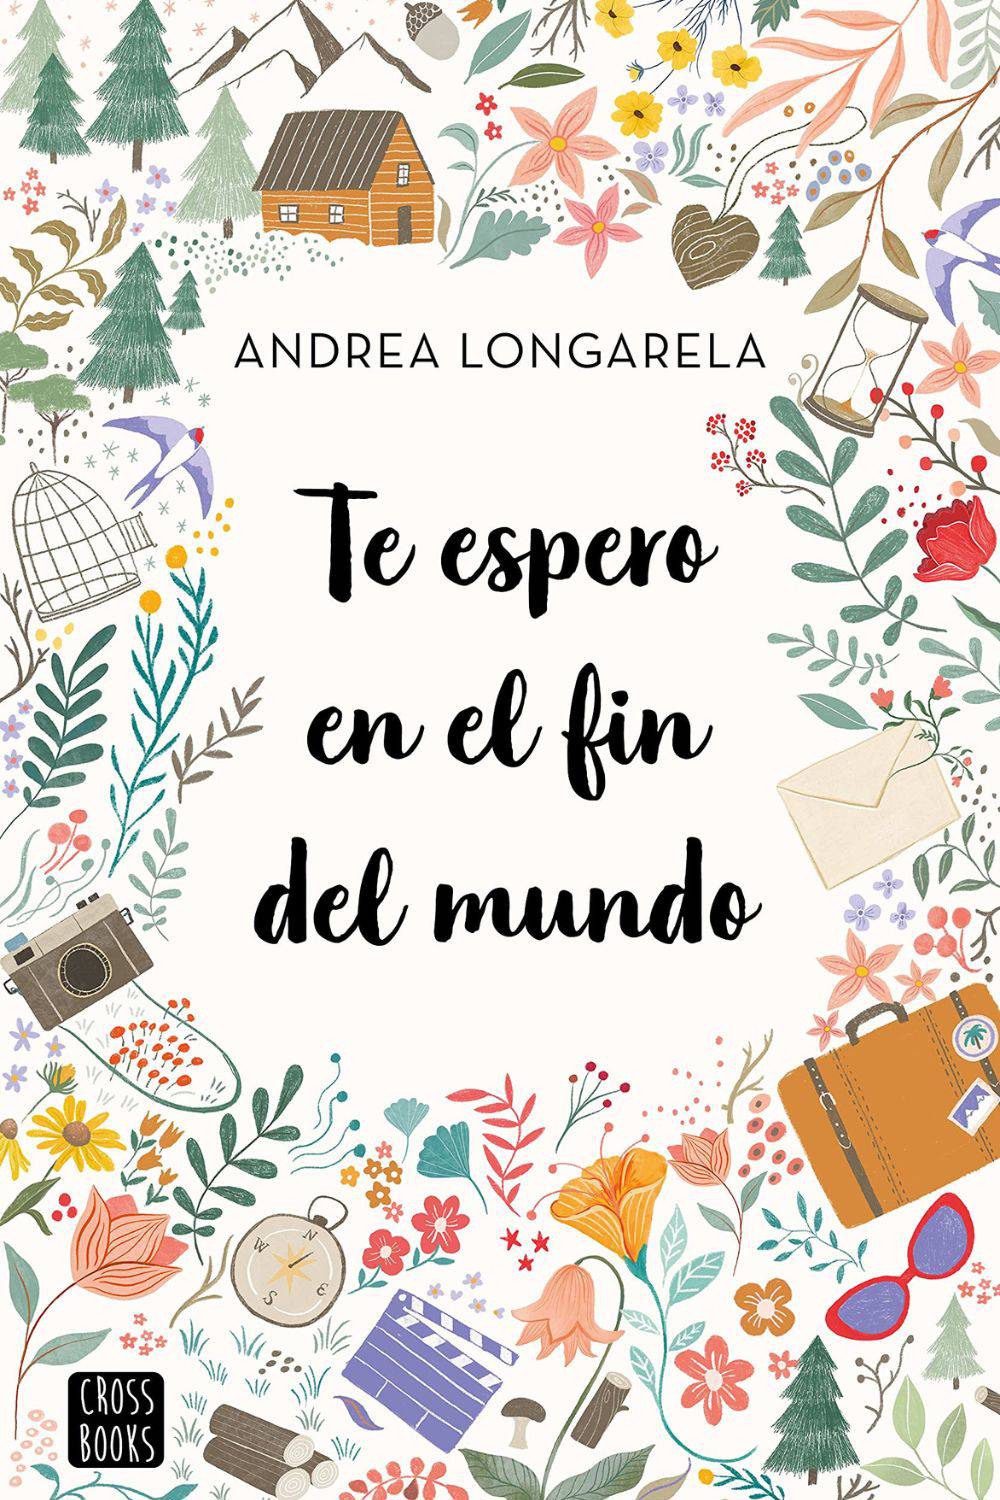 'Te espero en el fin del mundo' de Andrea Longarela